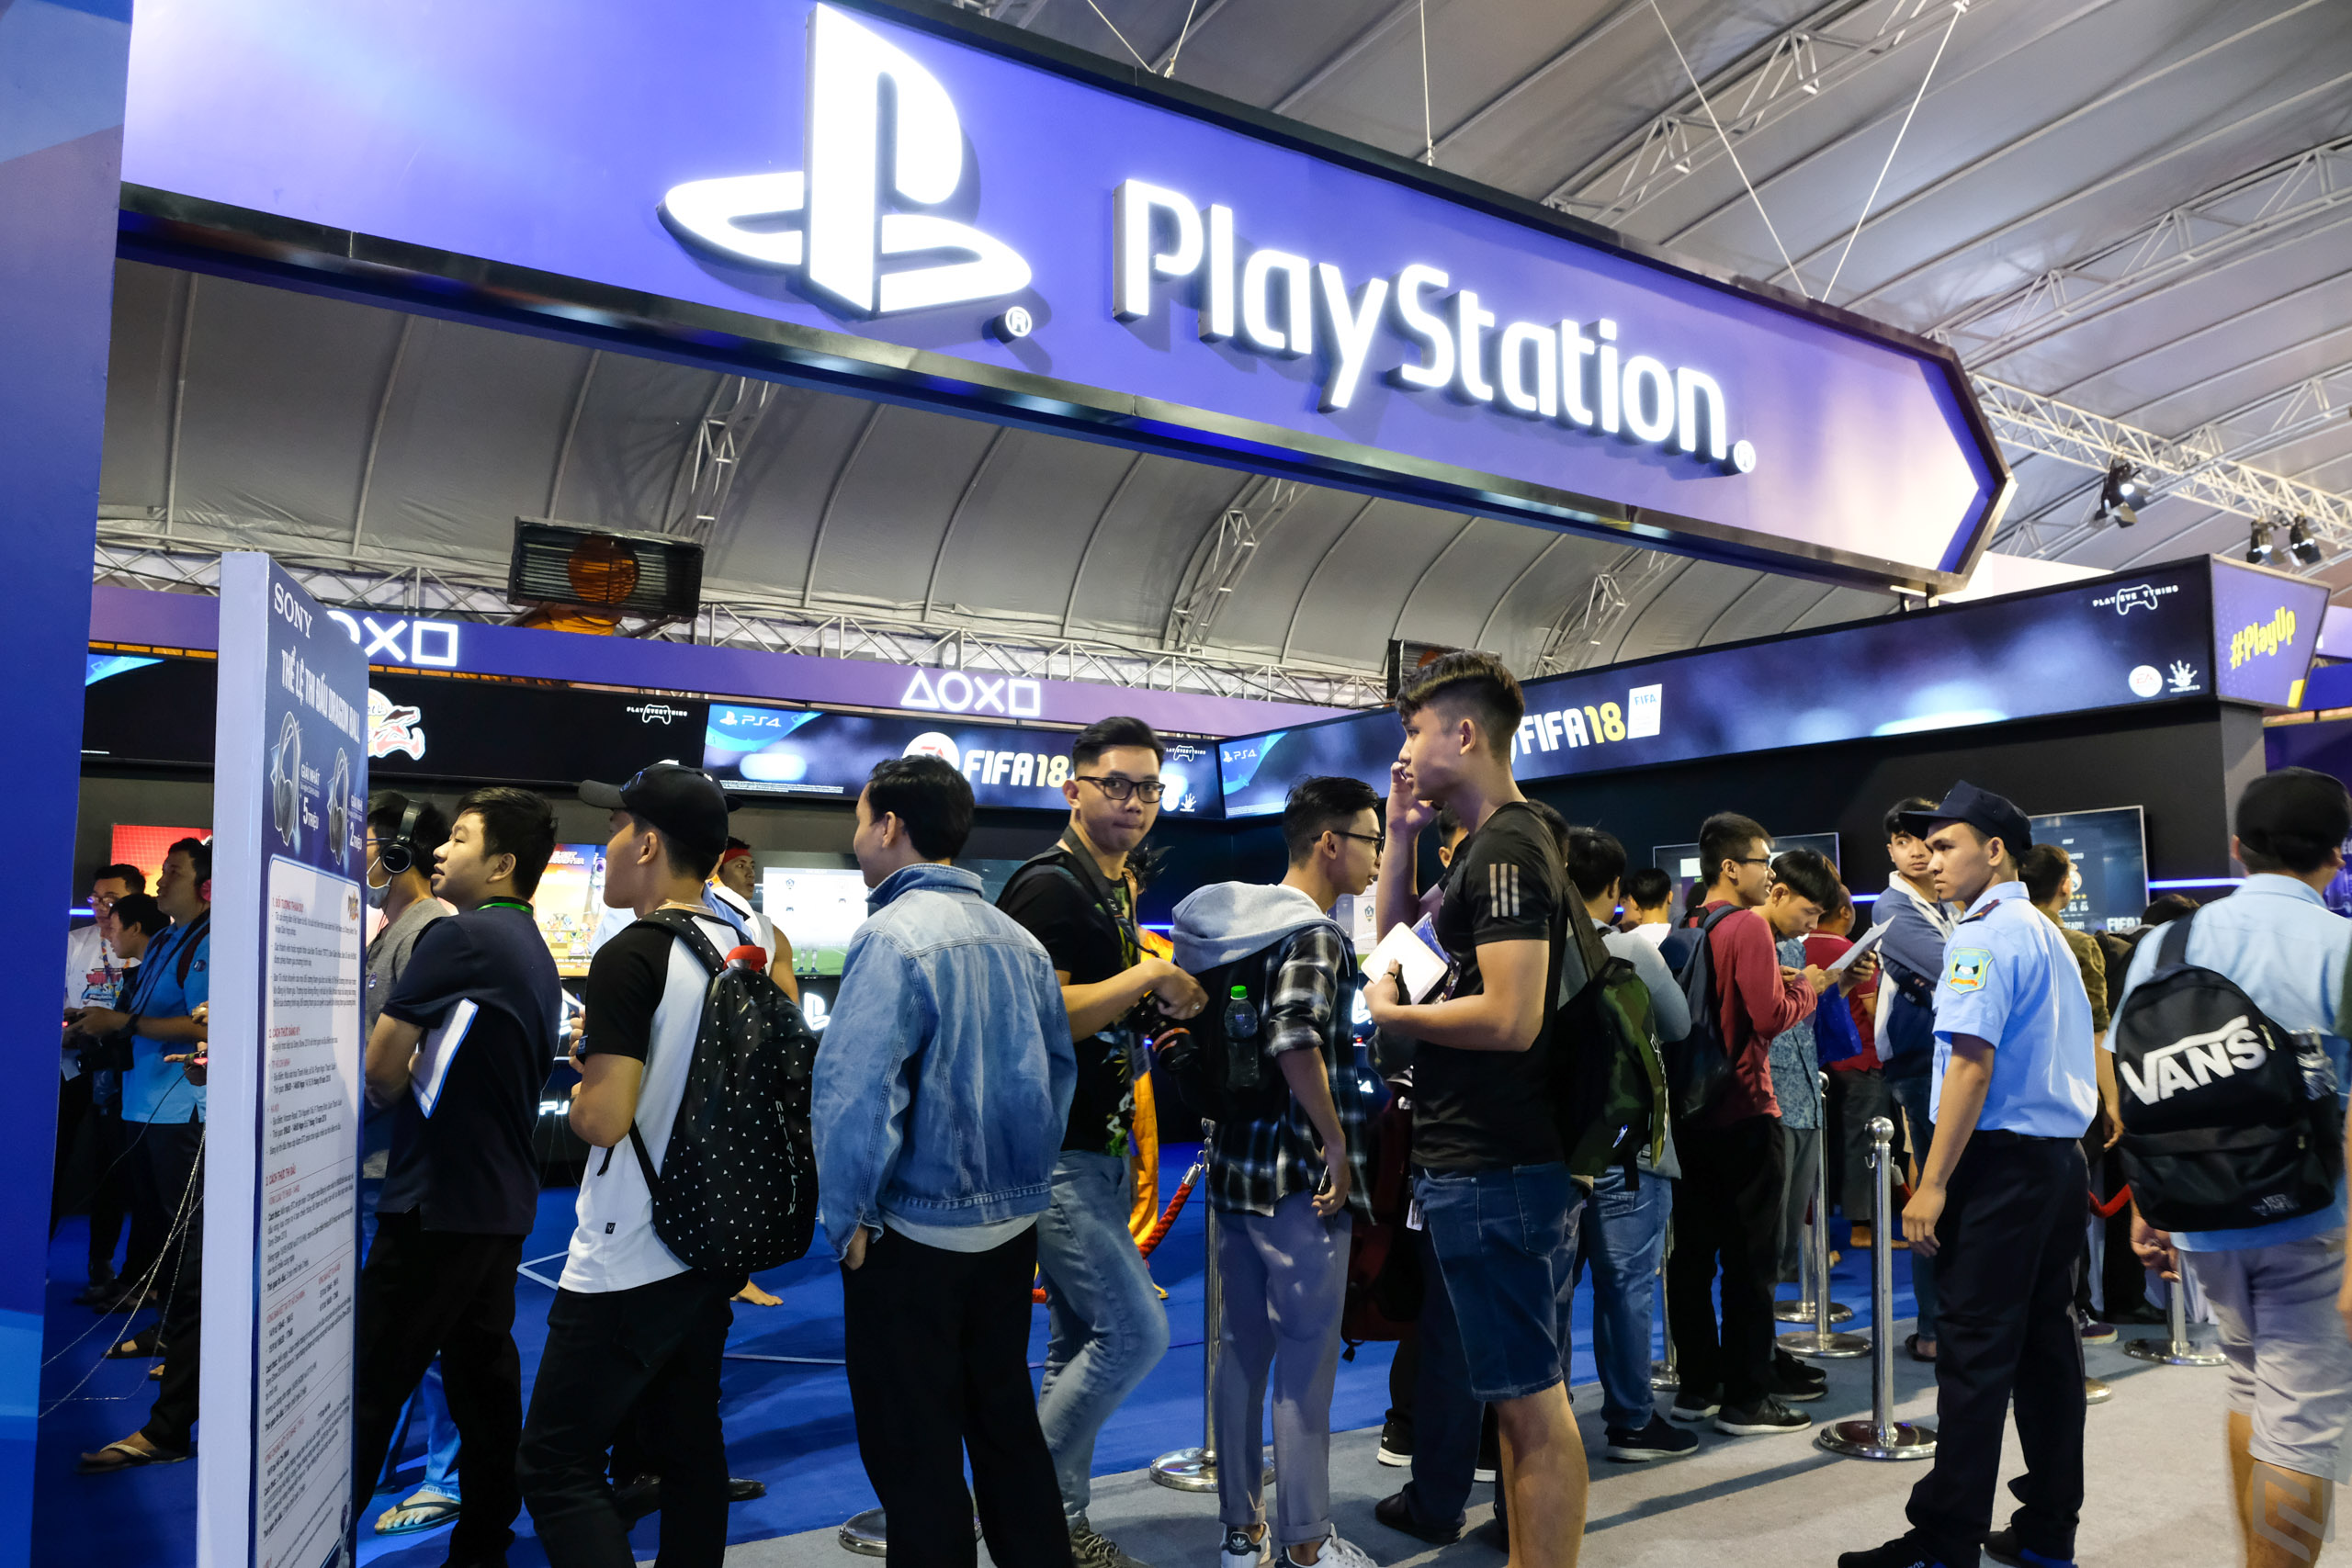 Báo cáo cho biết Sony sẽ cắt giảm vài tính năng cho máy ảnh mirrorless sắp tới để dành phần cứng cho PlayStation 5